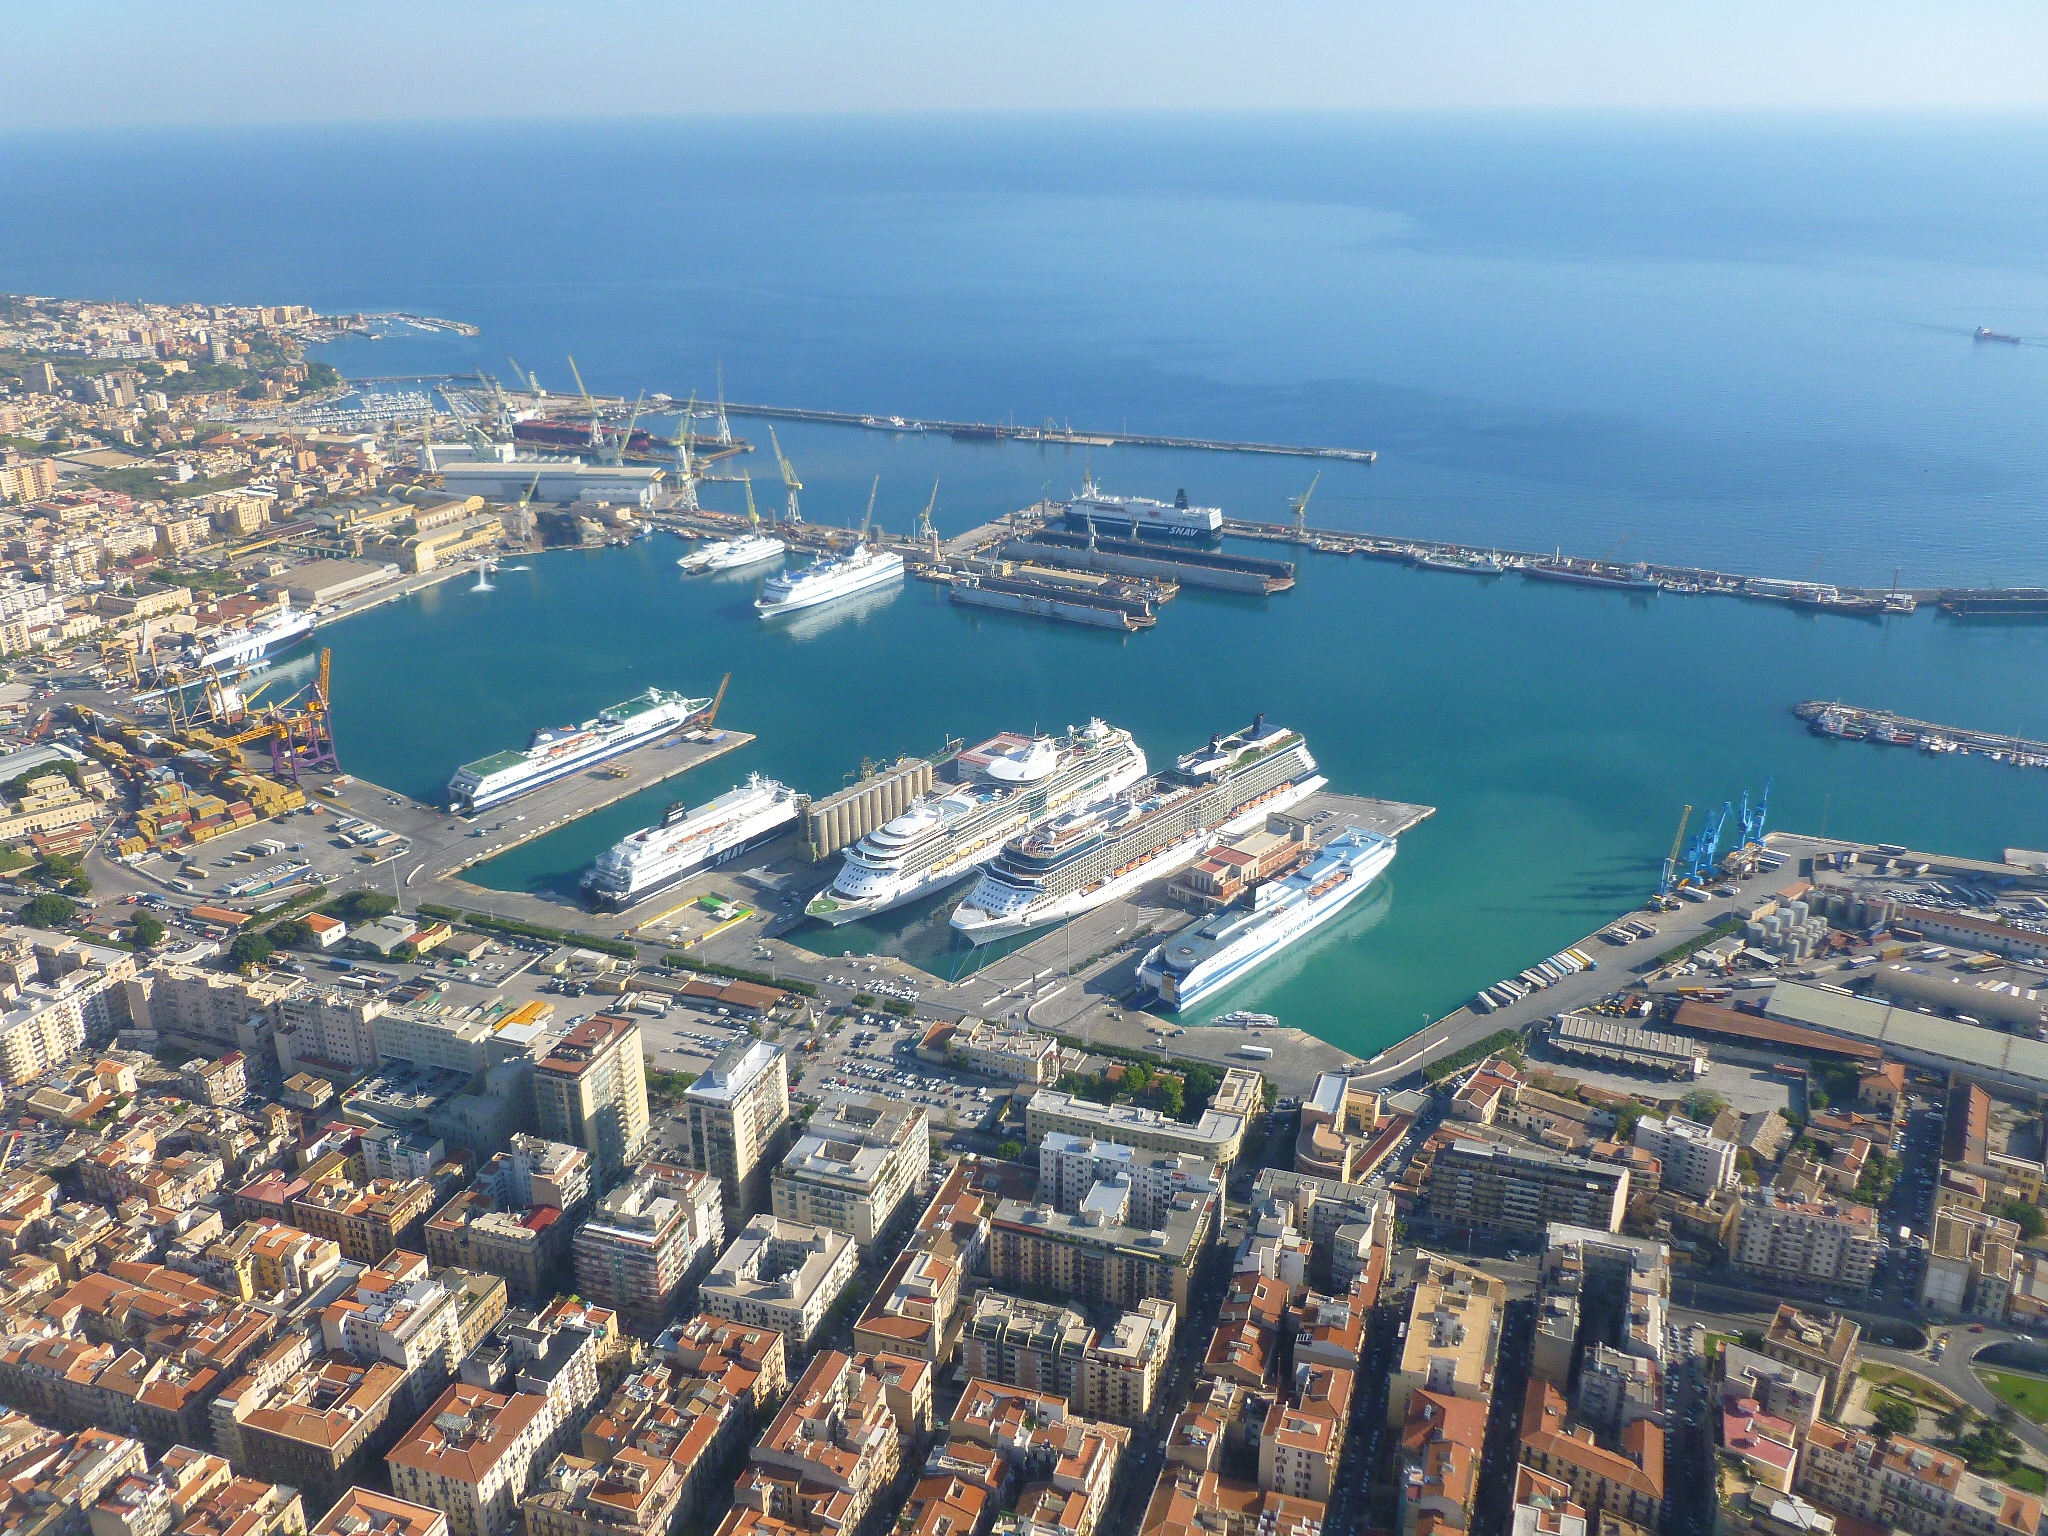 Ostruiscono la vista del mare: al porto di Palermo saranno demoliti 7  immobili - Giornale di Sicilia